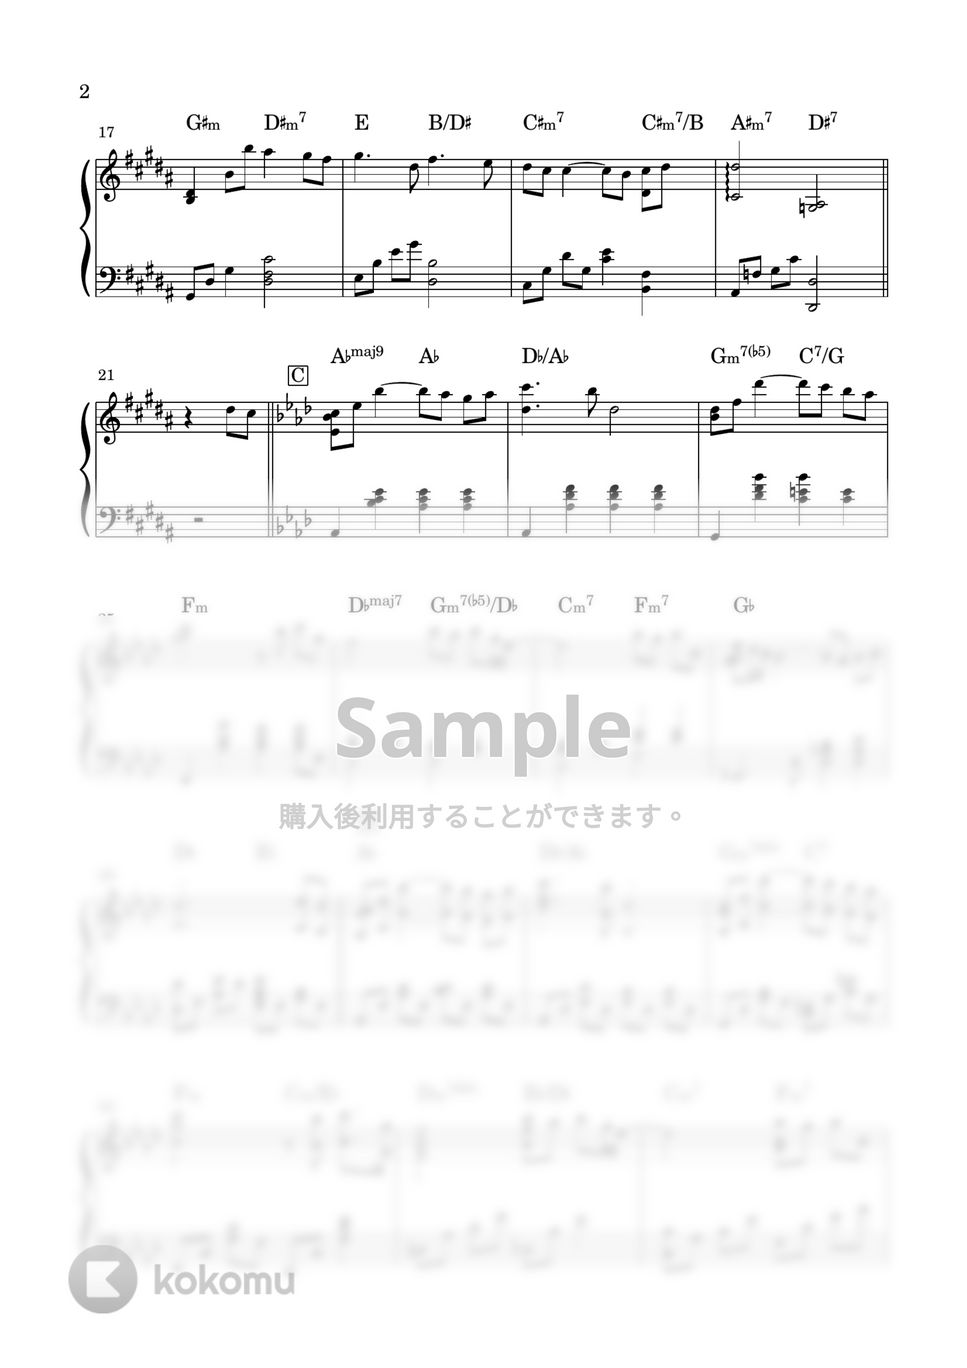 手嶌 葵 - こころをこめて (上級) by miiの楽譜棚